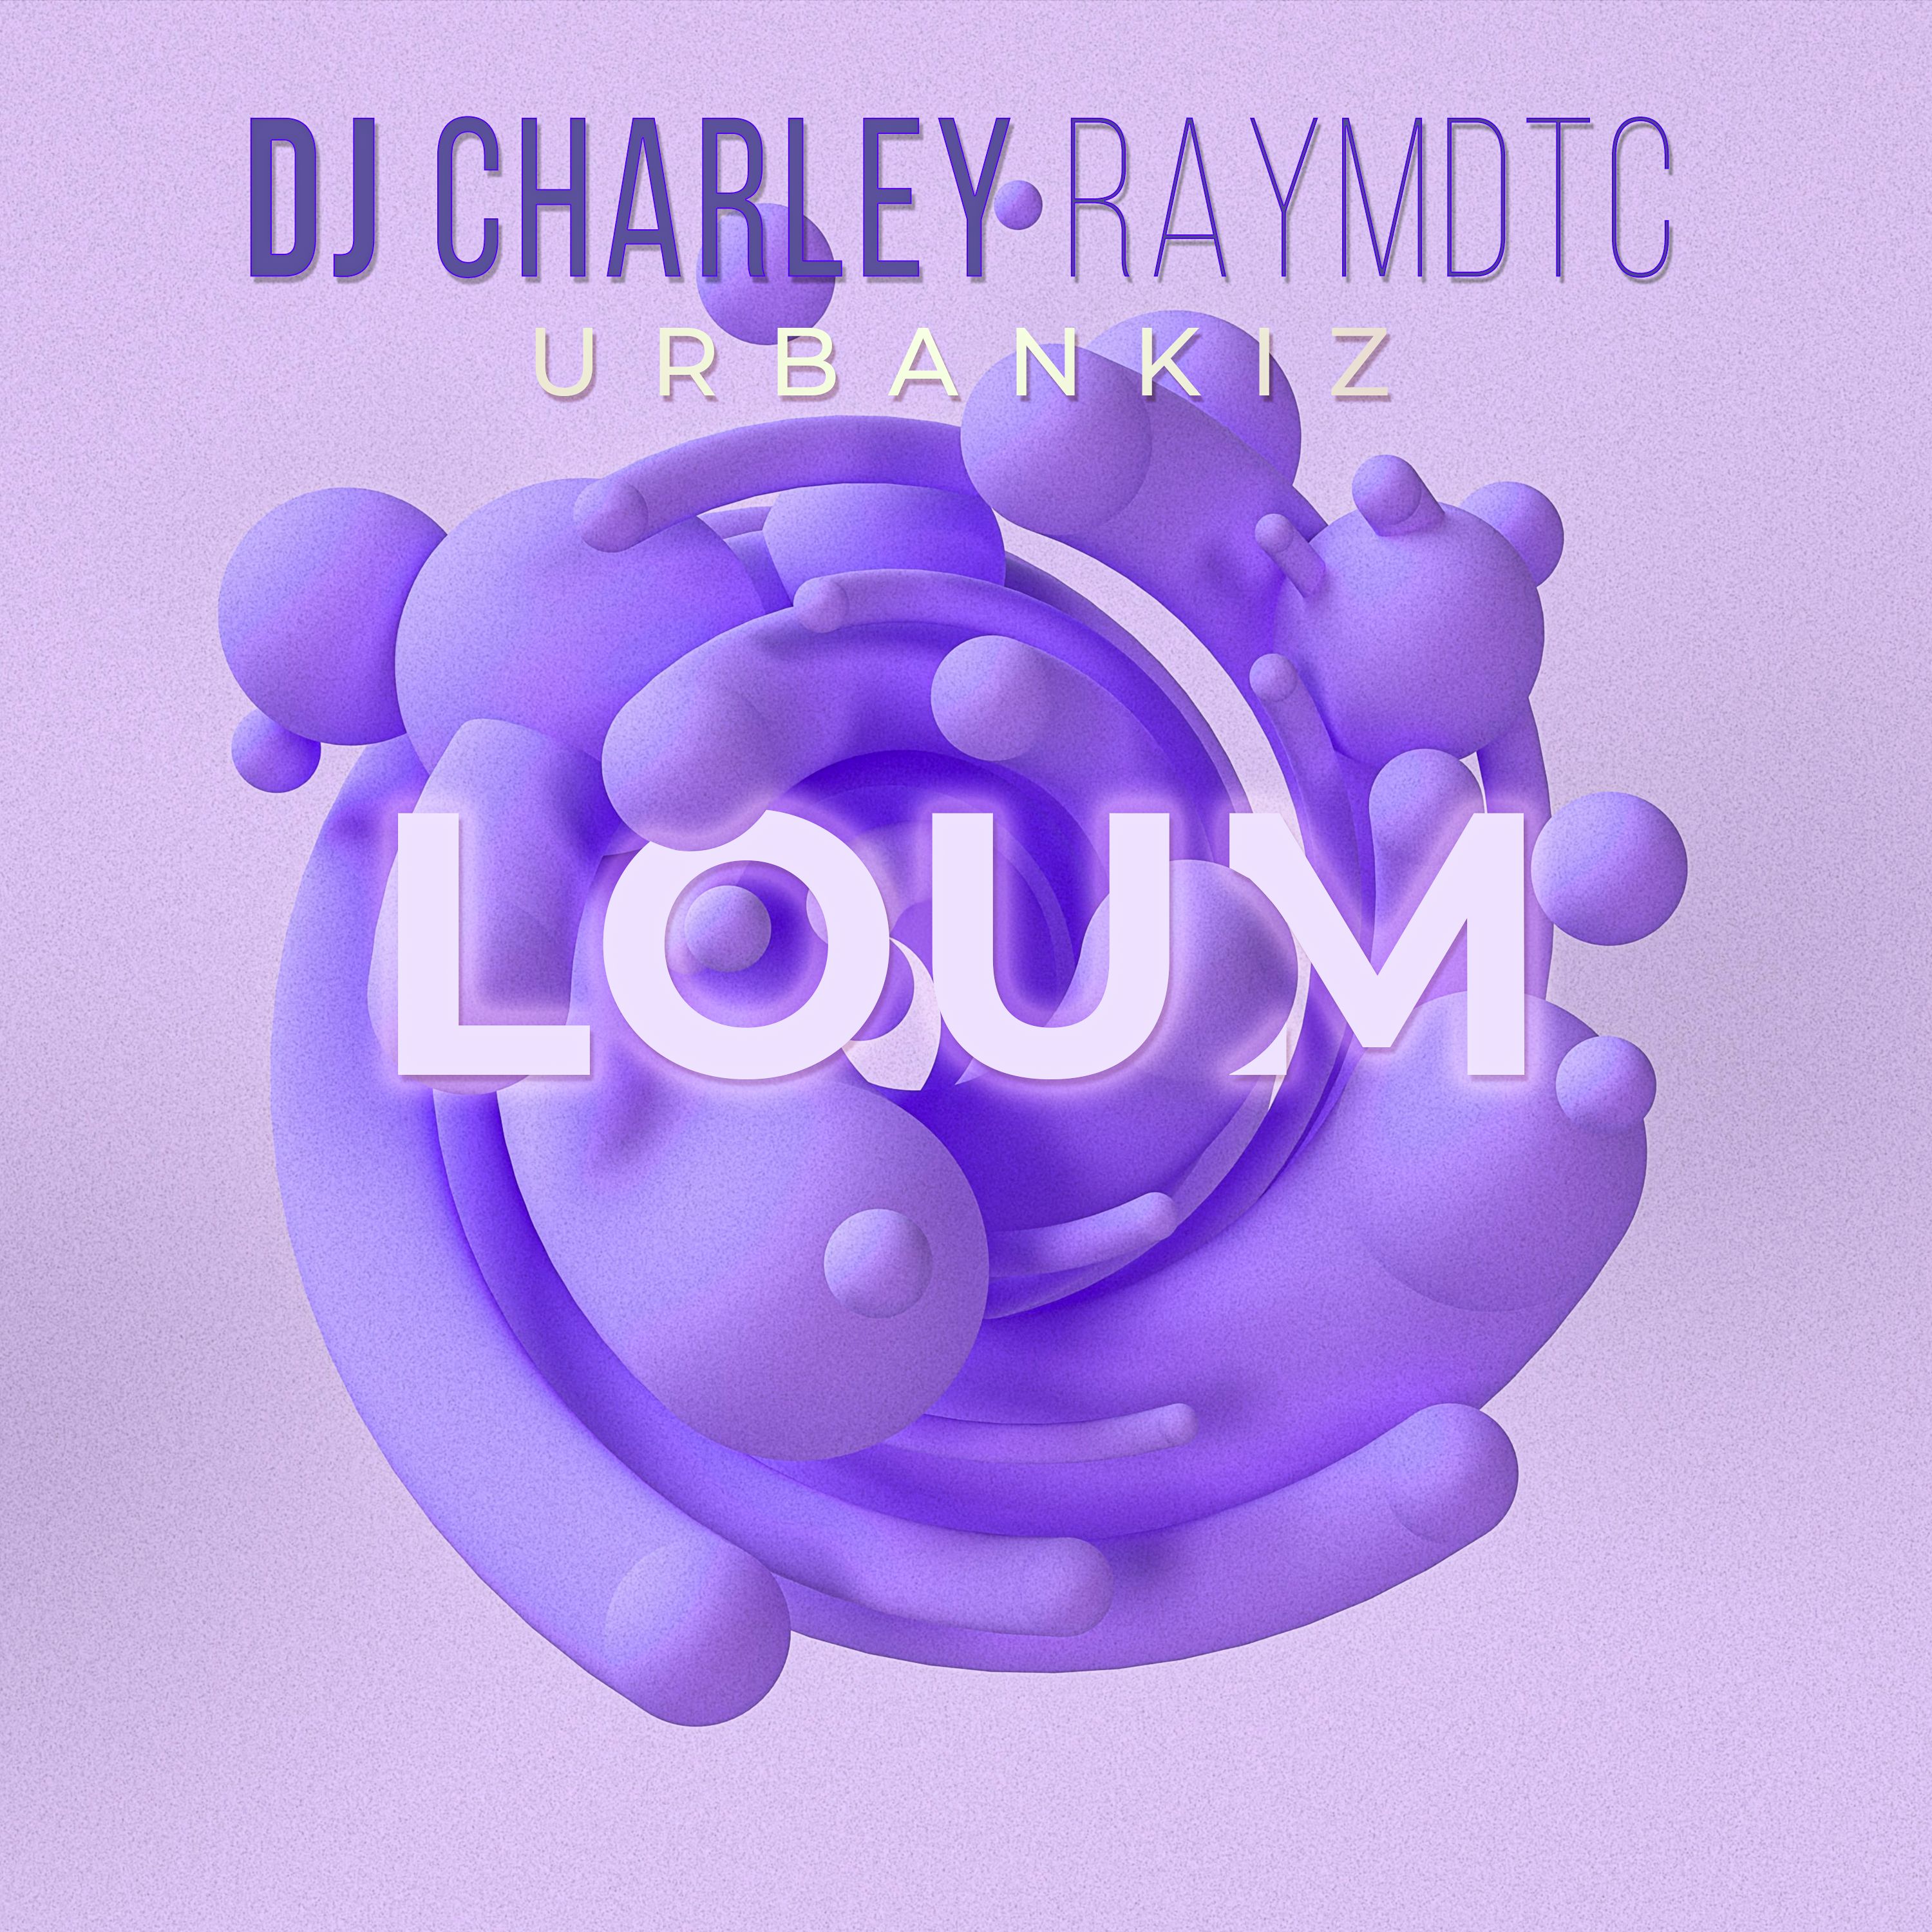 تحميل DJ Charley Raymdtc - Loum (Ubankiz 2022 )